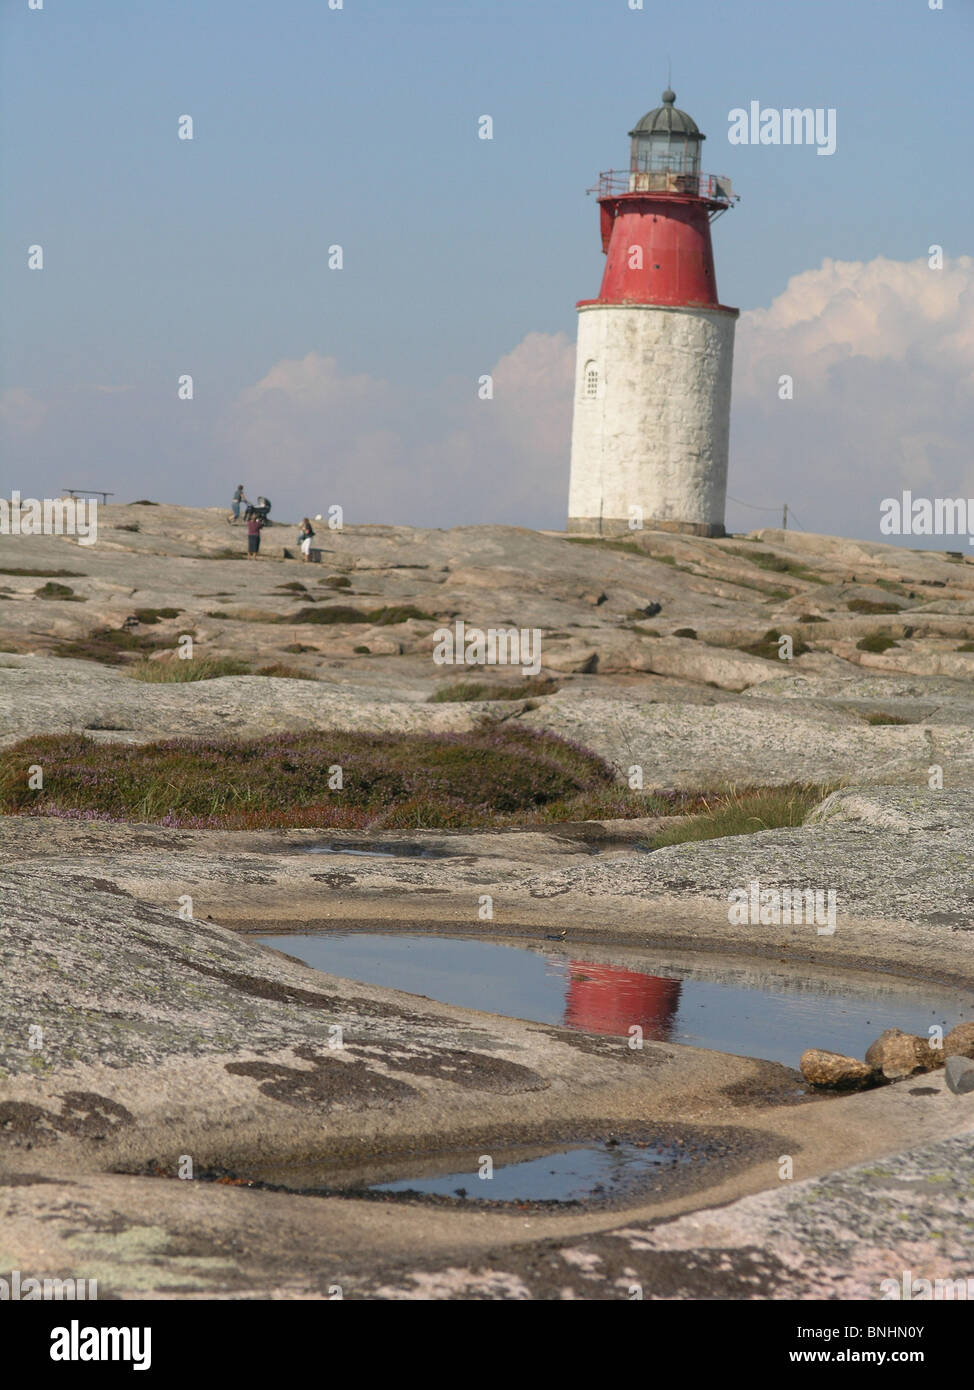 Sweden Hallö Bohuslän province lighthouse rock archipelago coast sea ocean landscape people Scandinavia Stock Photo